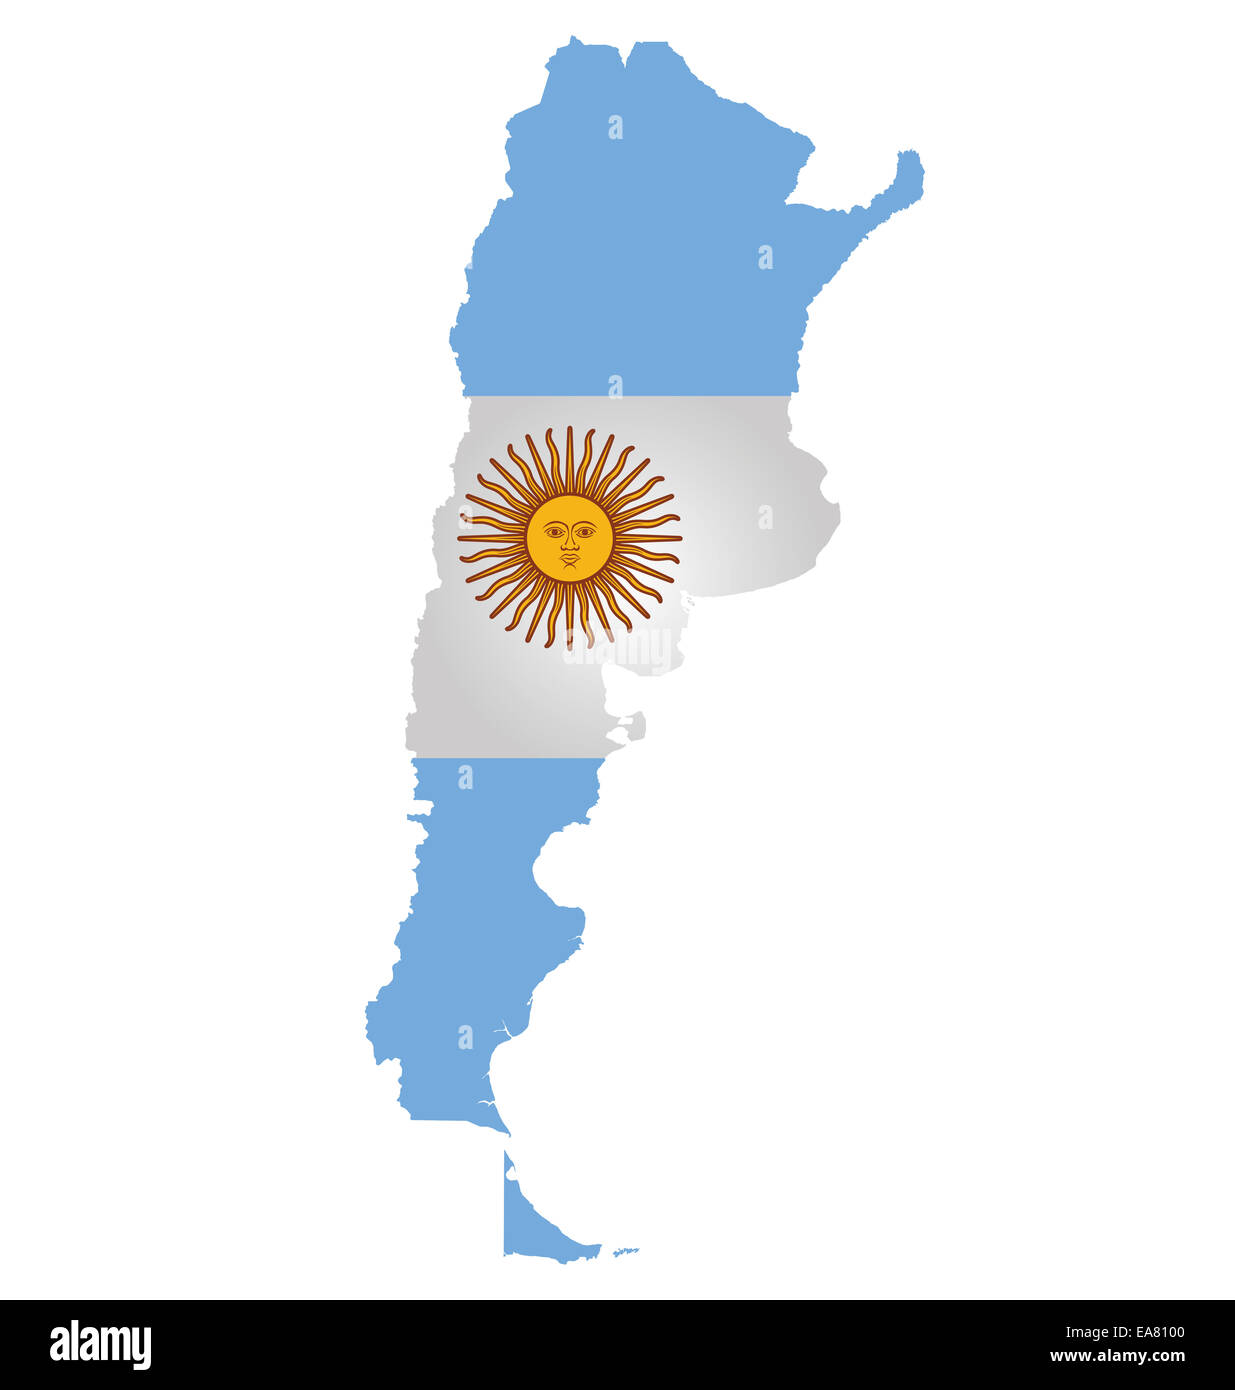 La Rioja (región de la Argentina, la República Argentina, en las